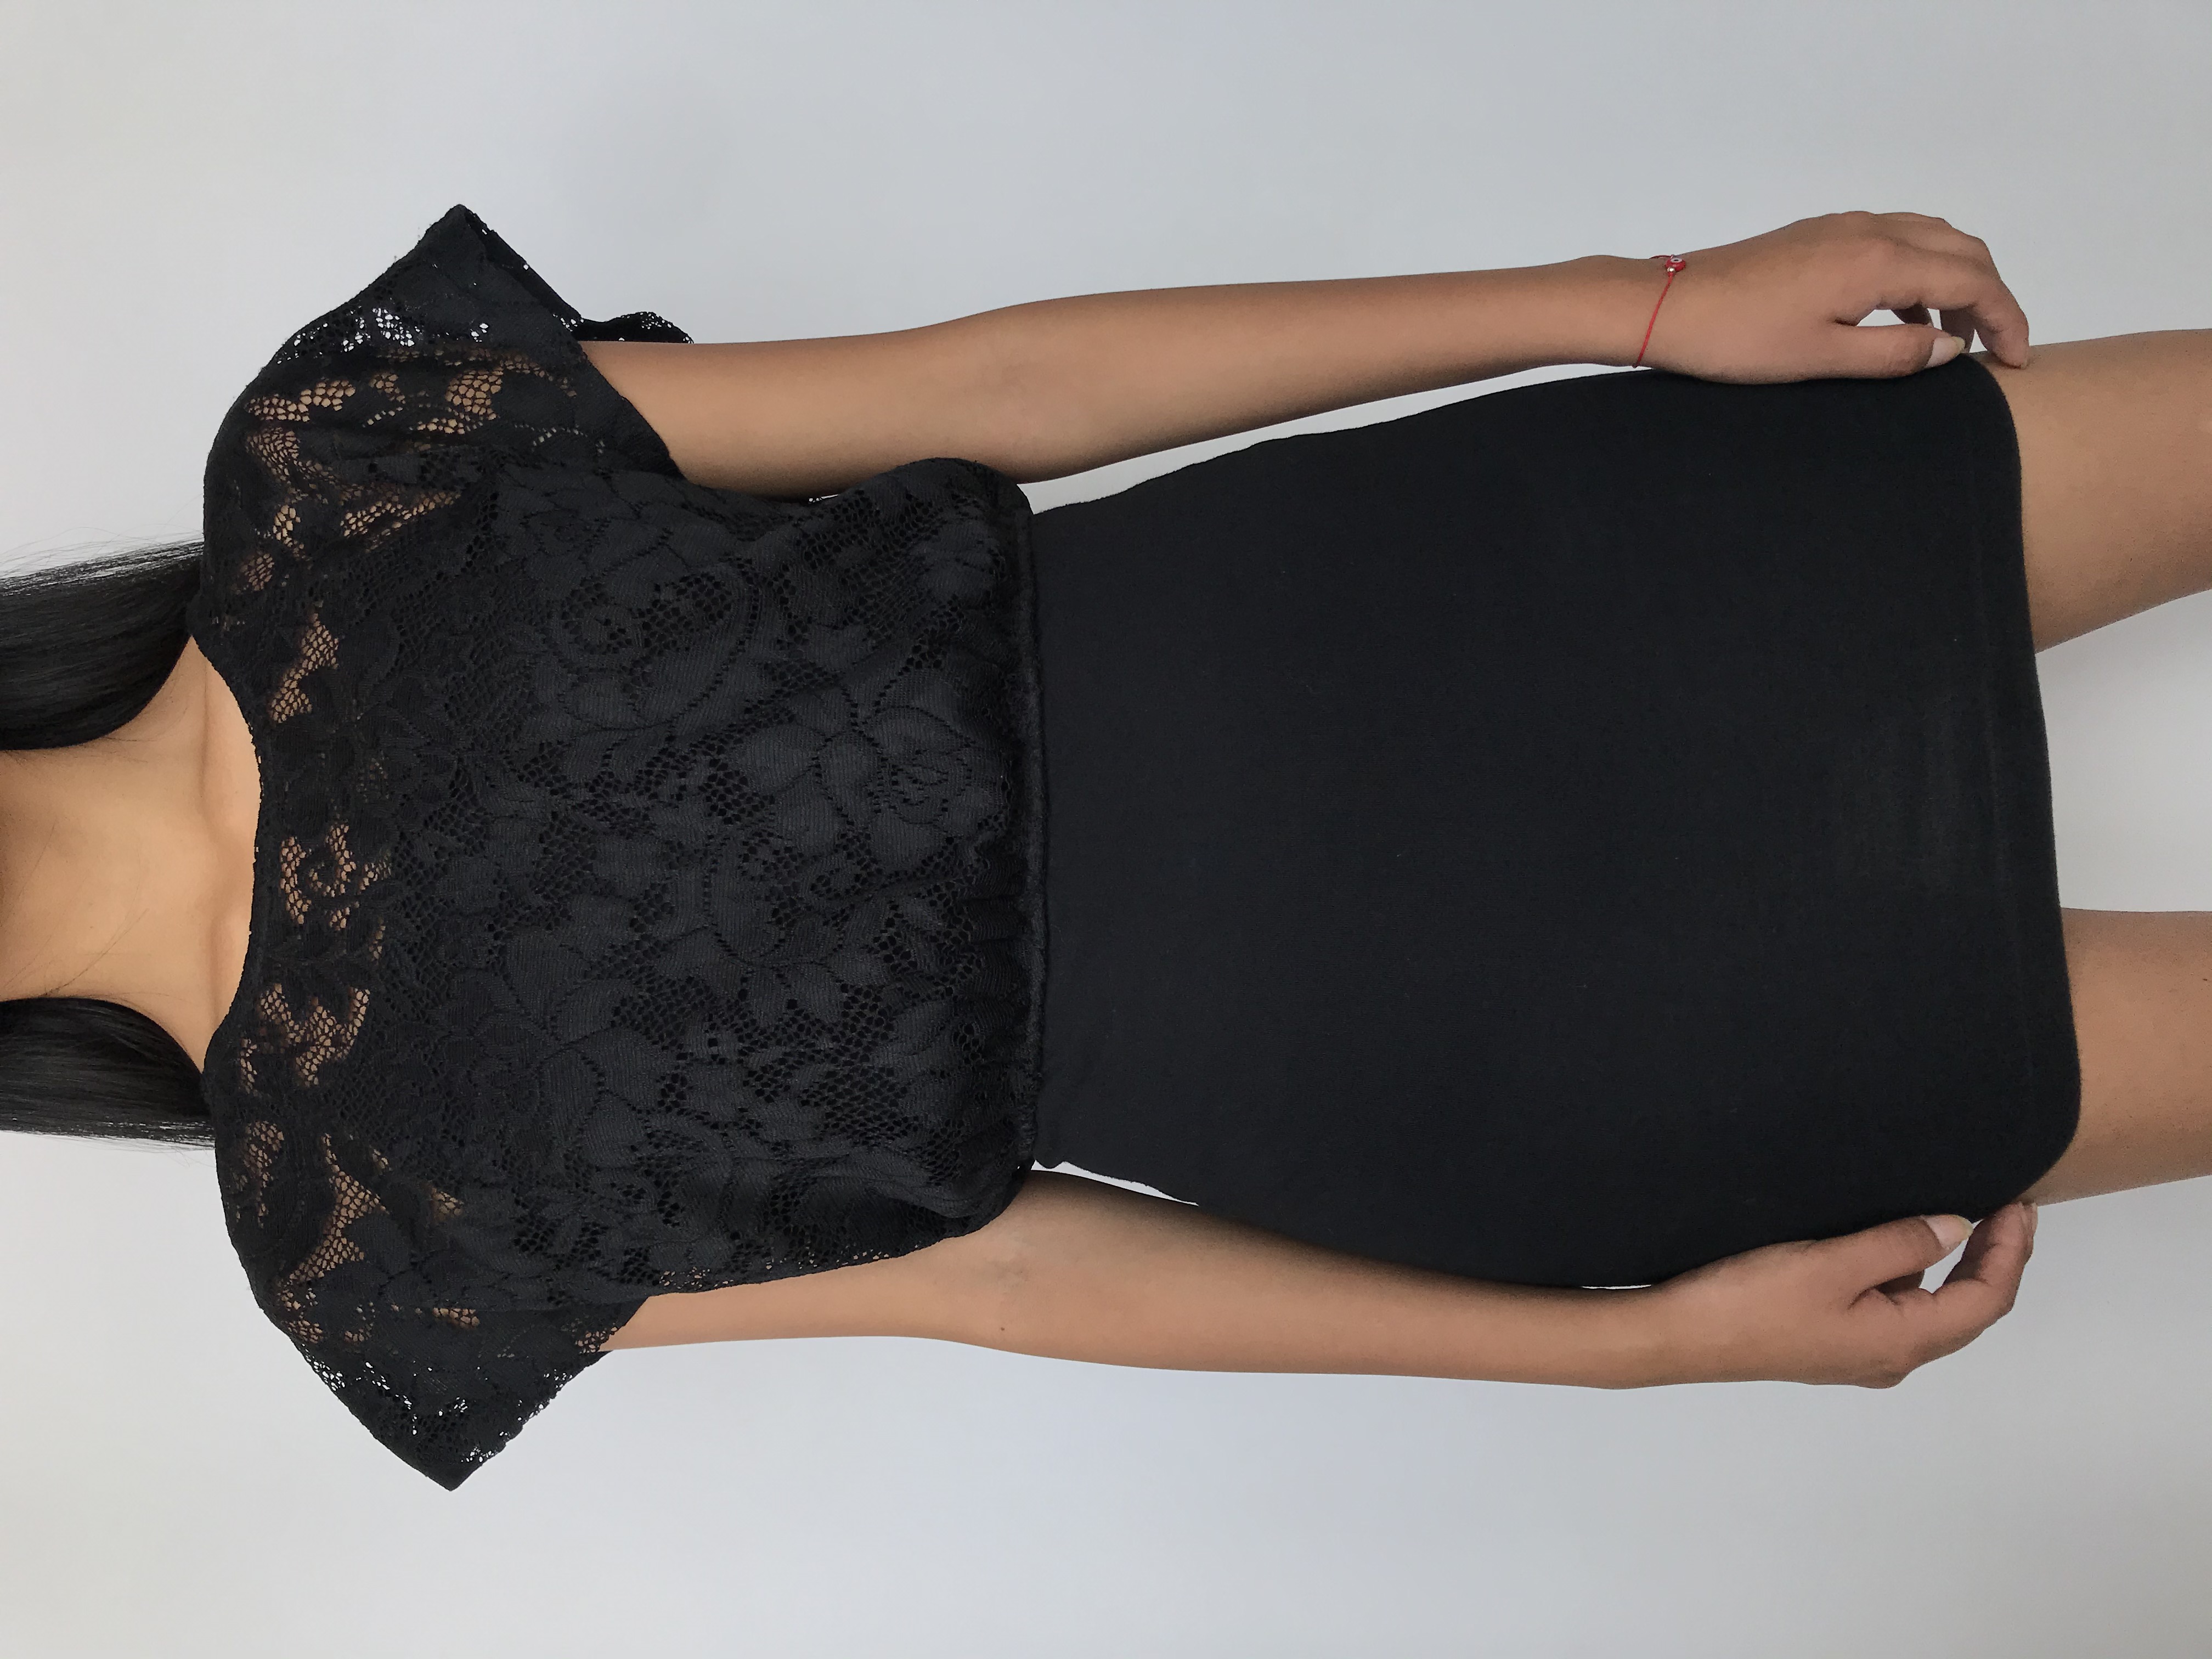 Vestido de encaje negro superior con top de tiritas, falda pegada 
Talla M